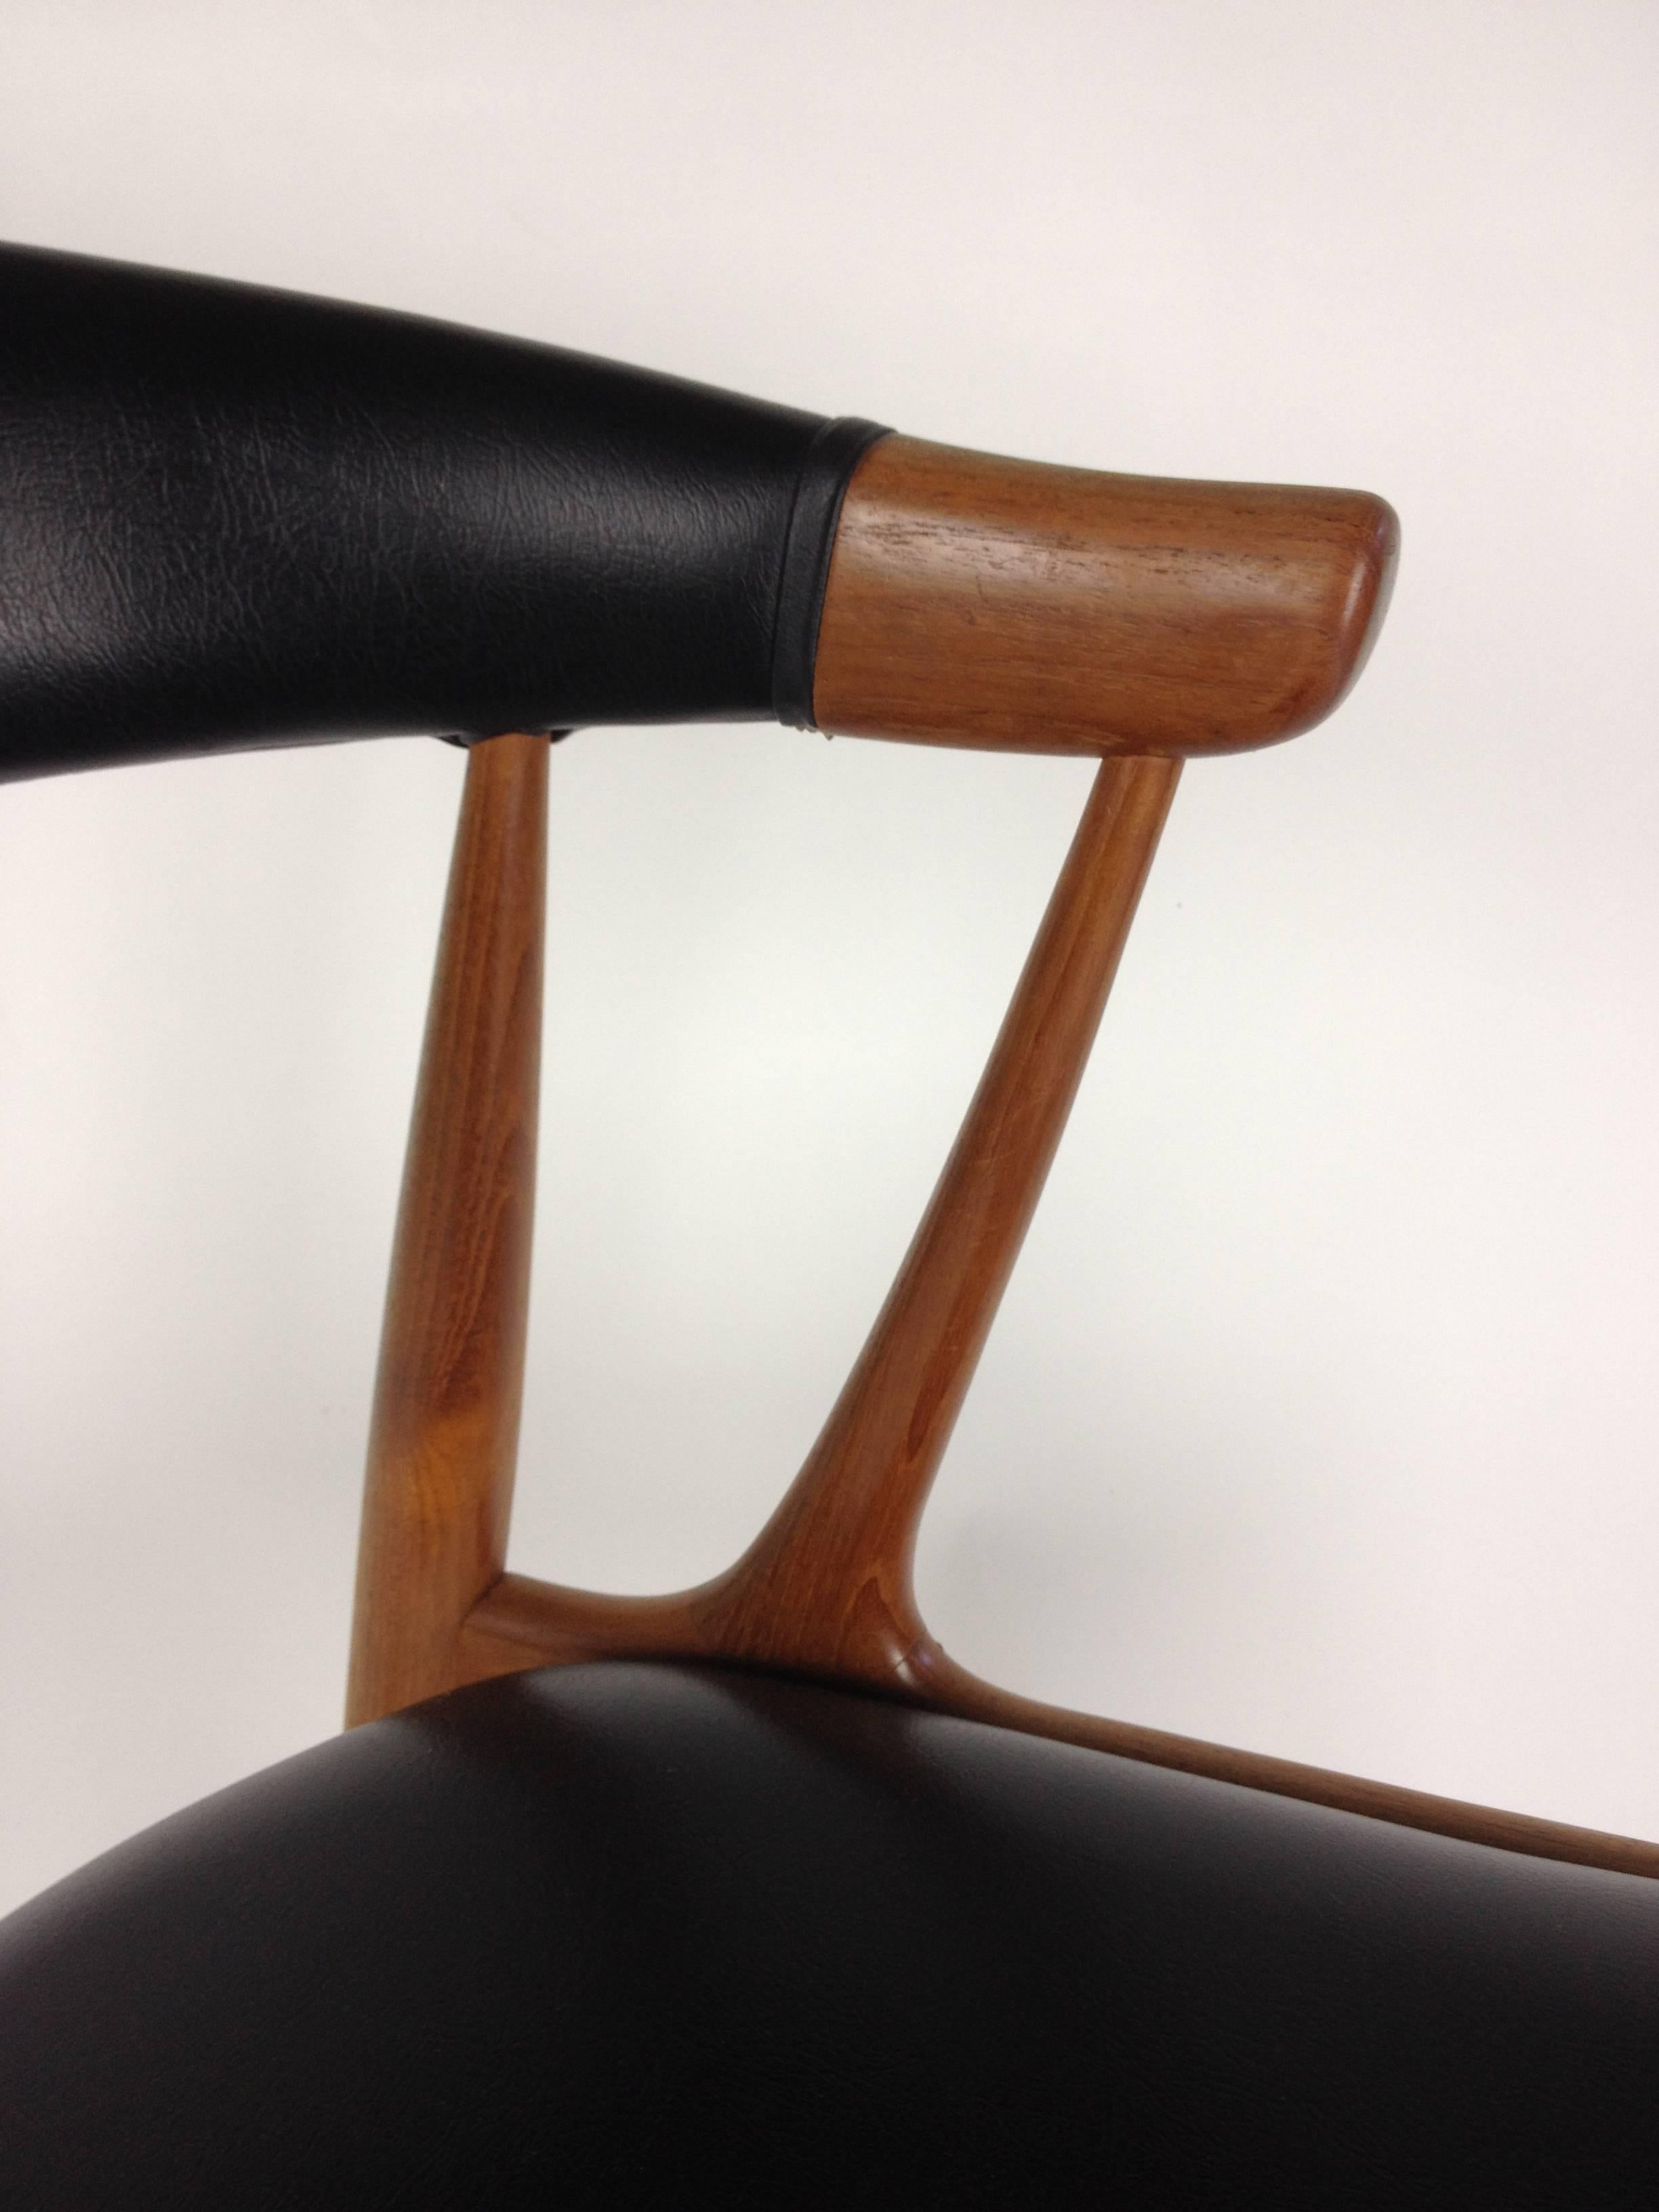 Naugahyde Striking Mid-Century Modern Teak Chair Designed by Johannes Andersen - Denmark For Sale